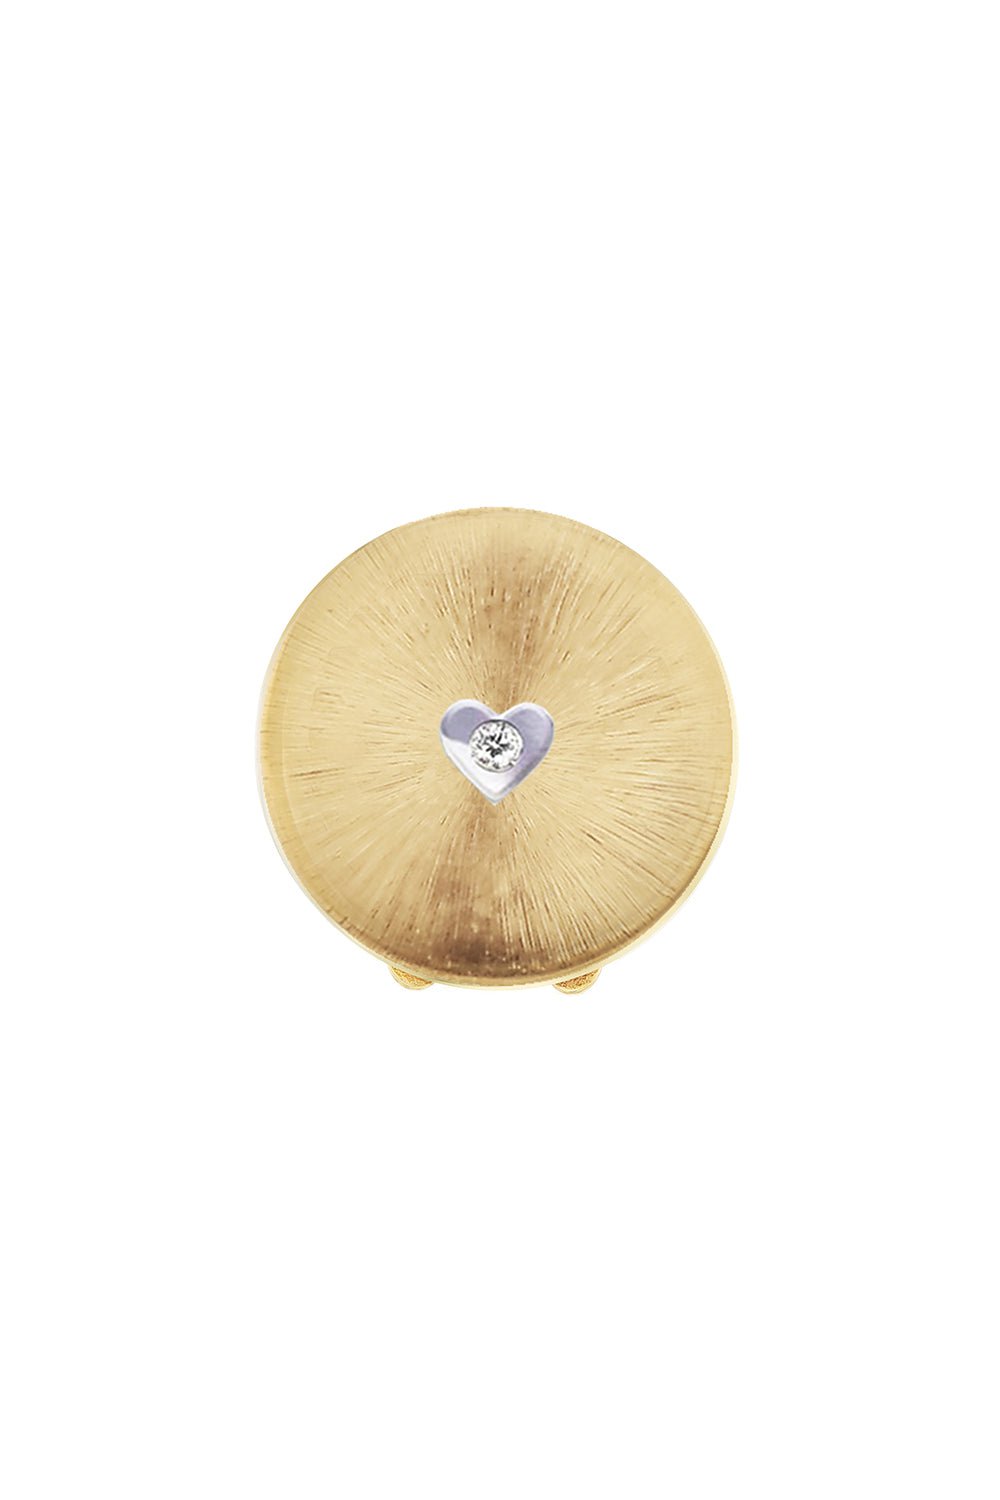 ANNA MACCIERI ROSSI-Heart Diamond Button Cover-YELLOW GOLD